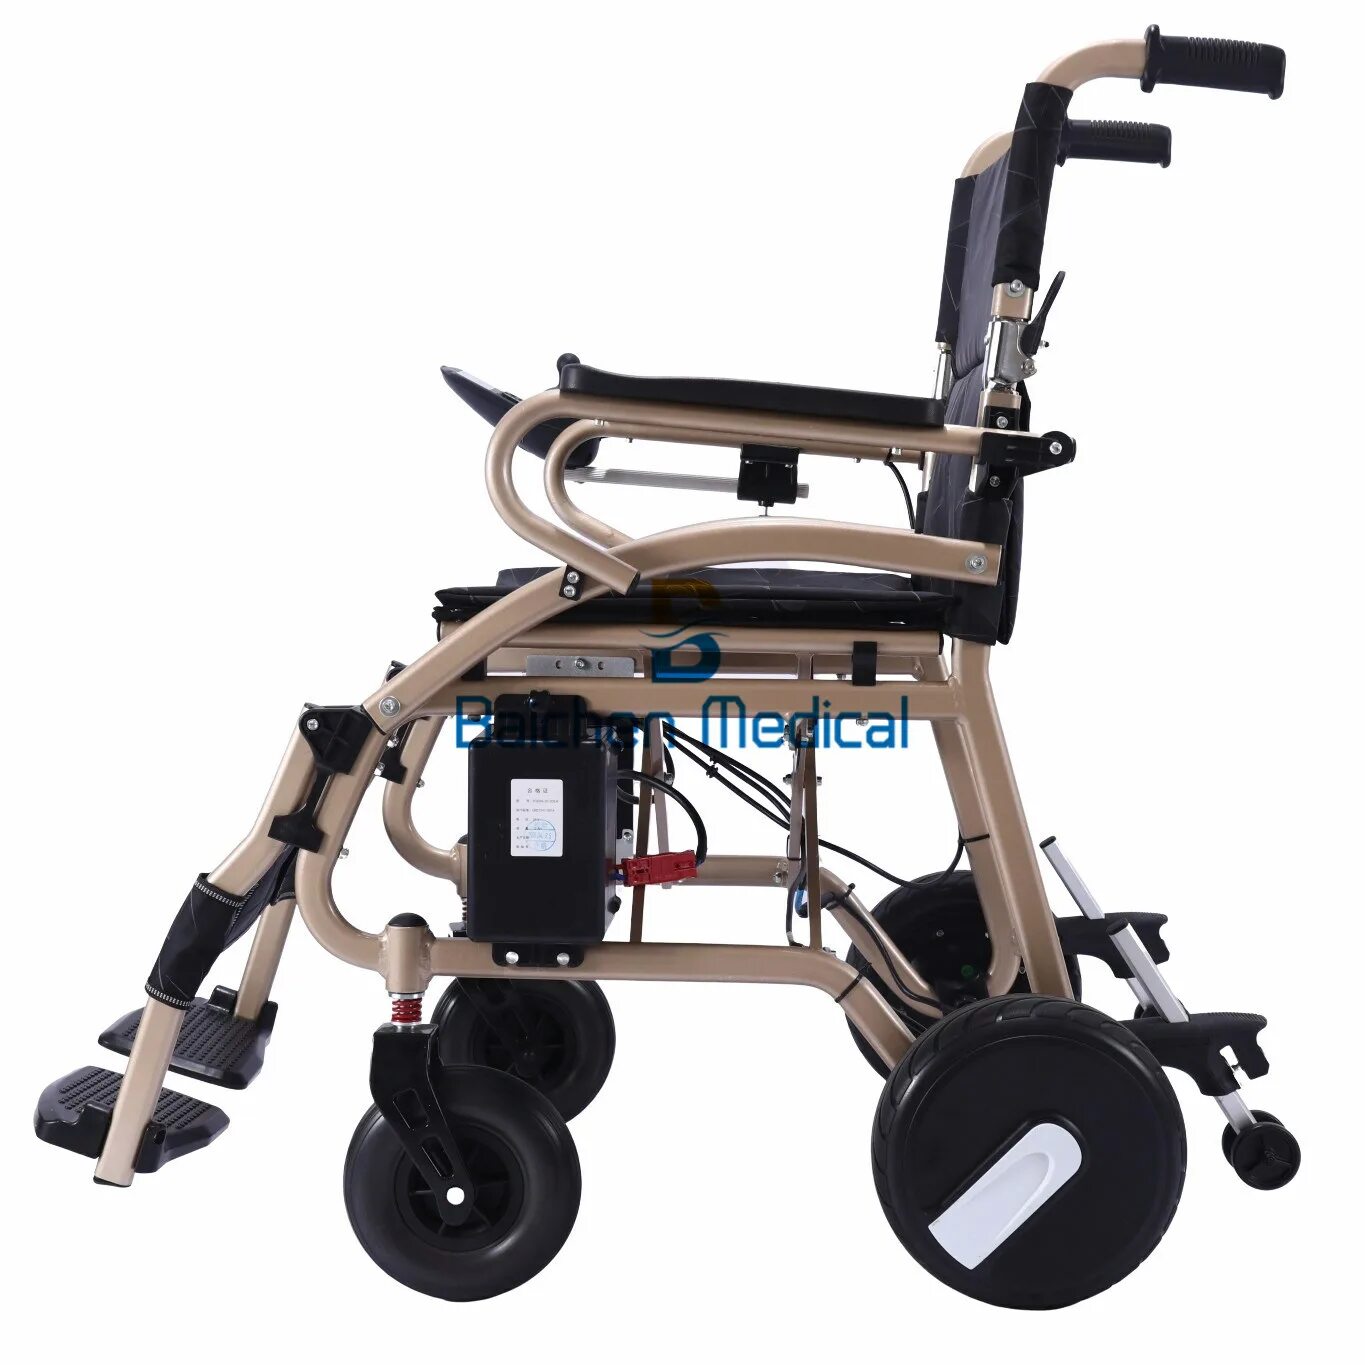 Китайская коляска купить. Приставка Sunny электропривод для инвалидной коляски. Baichen Medical электрическая инвалидная коляска,. Электрический привод для инвалидной коляски. Контроллер инвалидной коляски.